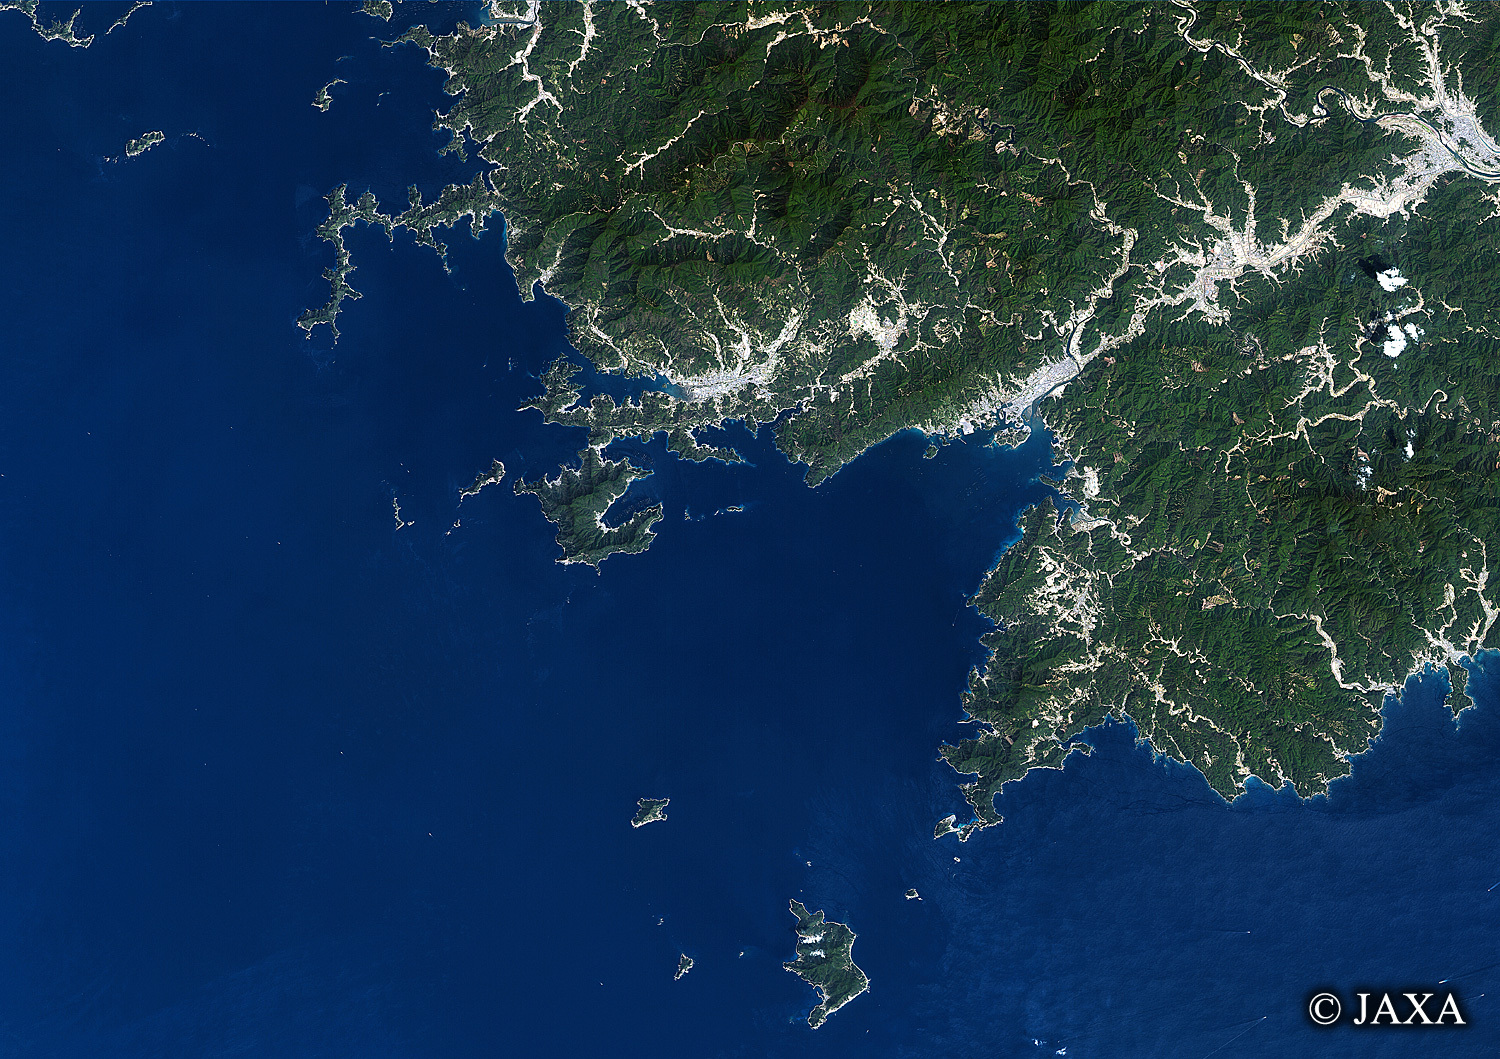 だいちから見た日本の都市 宿毛湾:衛星画像